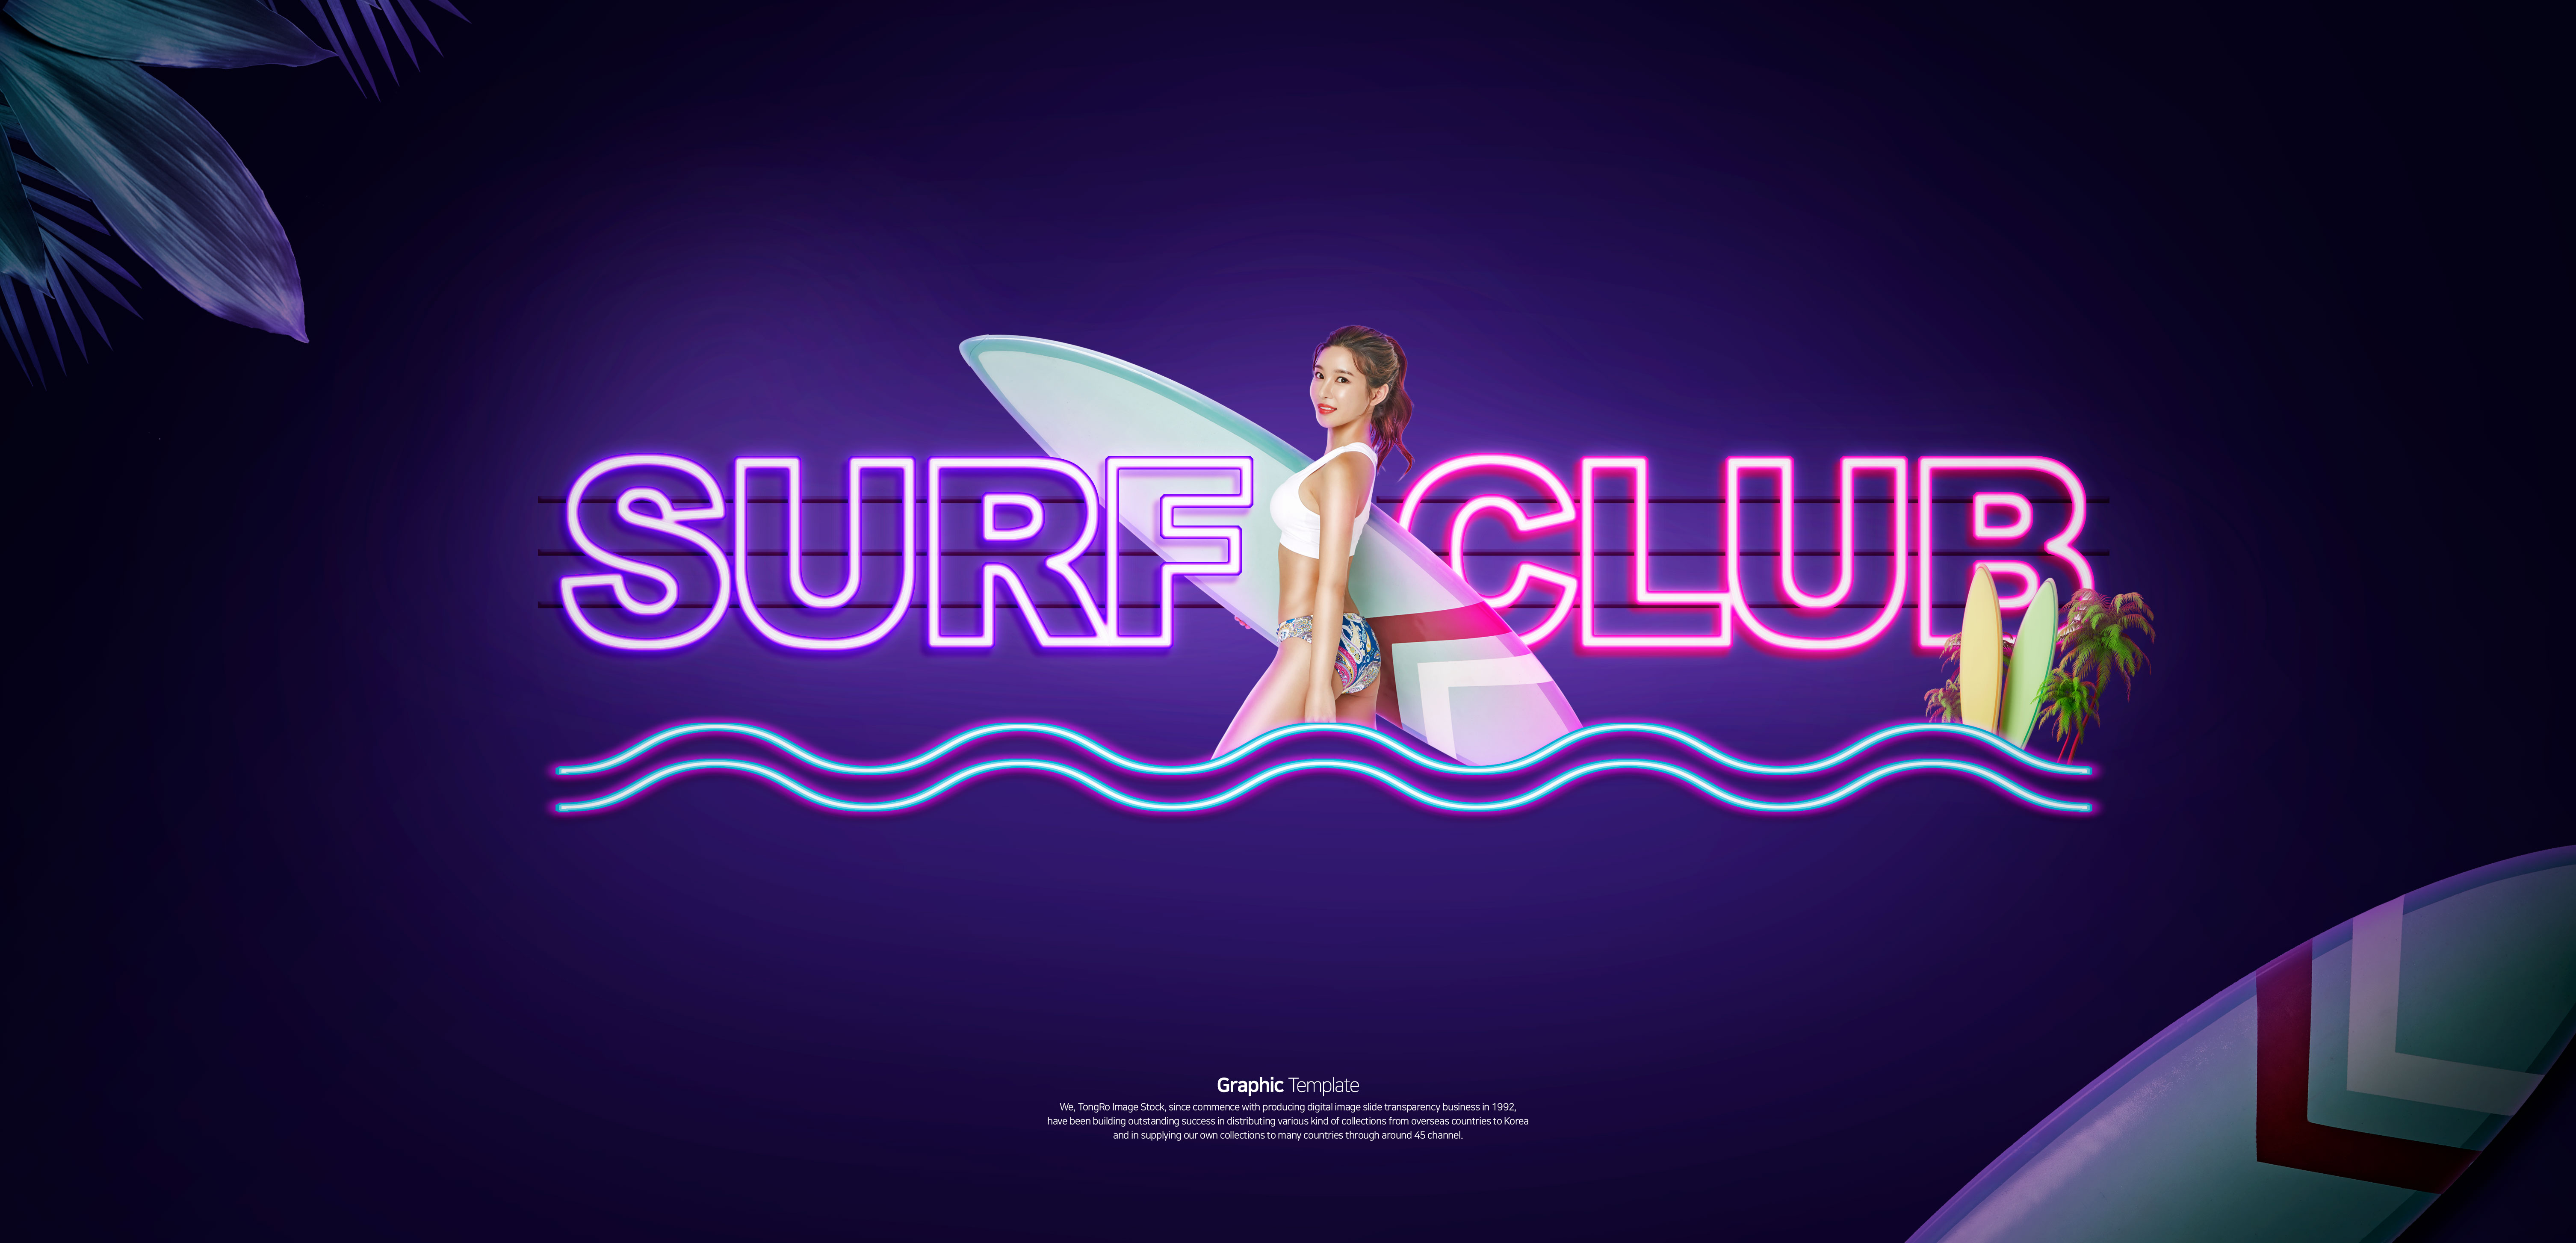 冲浪俱乐部夏季活动宣传广告Banner设计插图